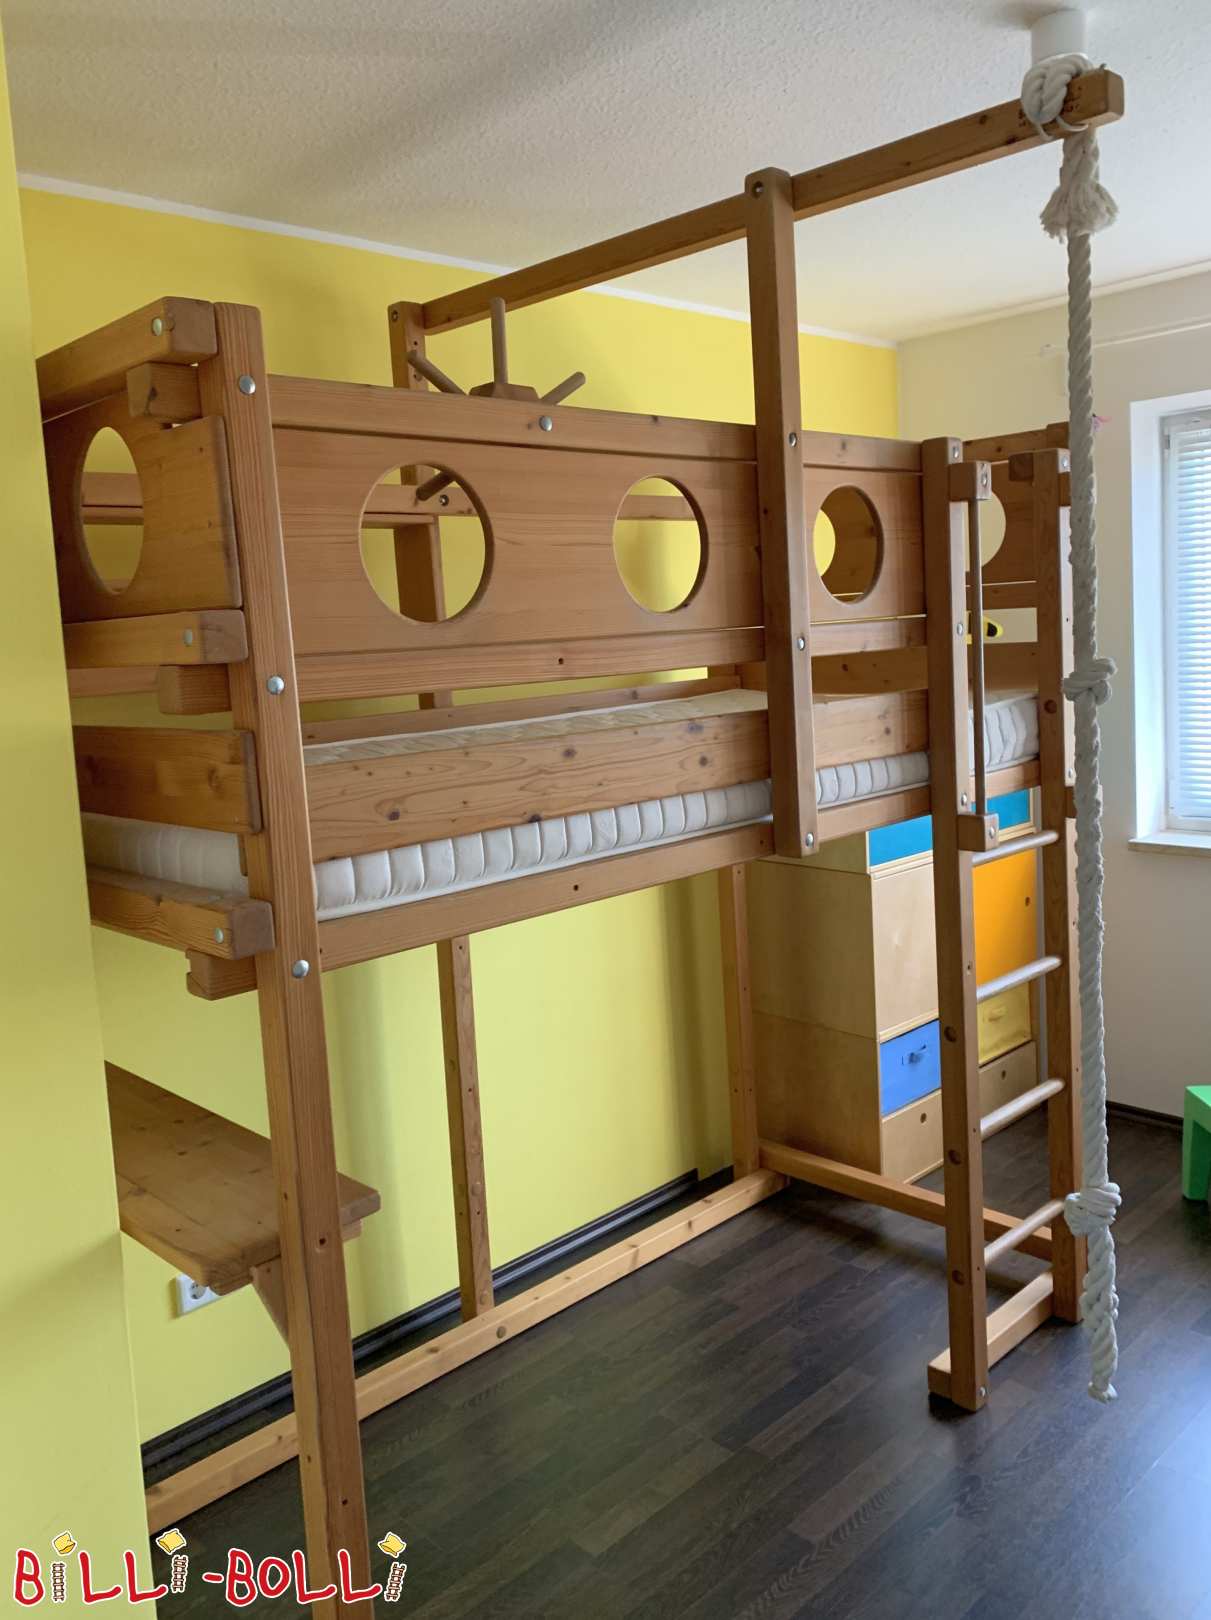 Krevet u potkrovlju raste s djetetom, nauljen medom, Denzlingen (Kategorija: Korišten krevet u potkrovlju)